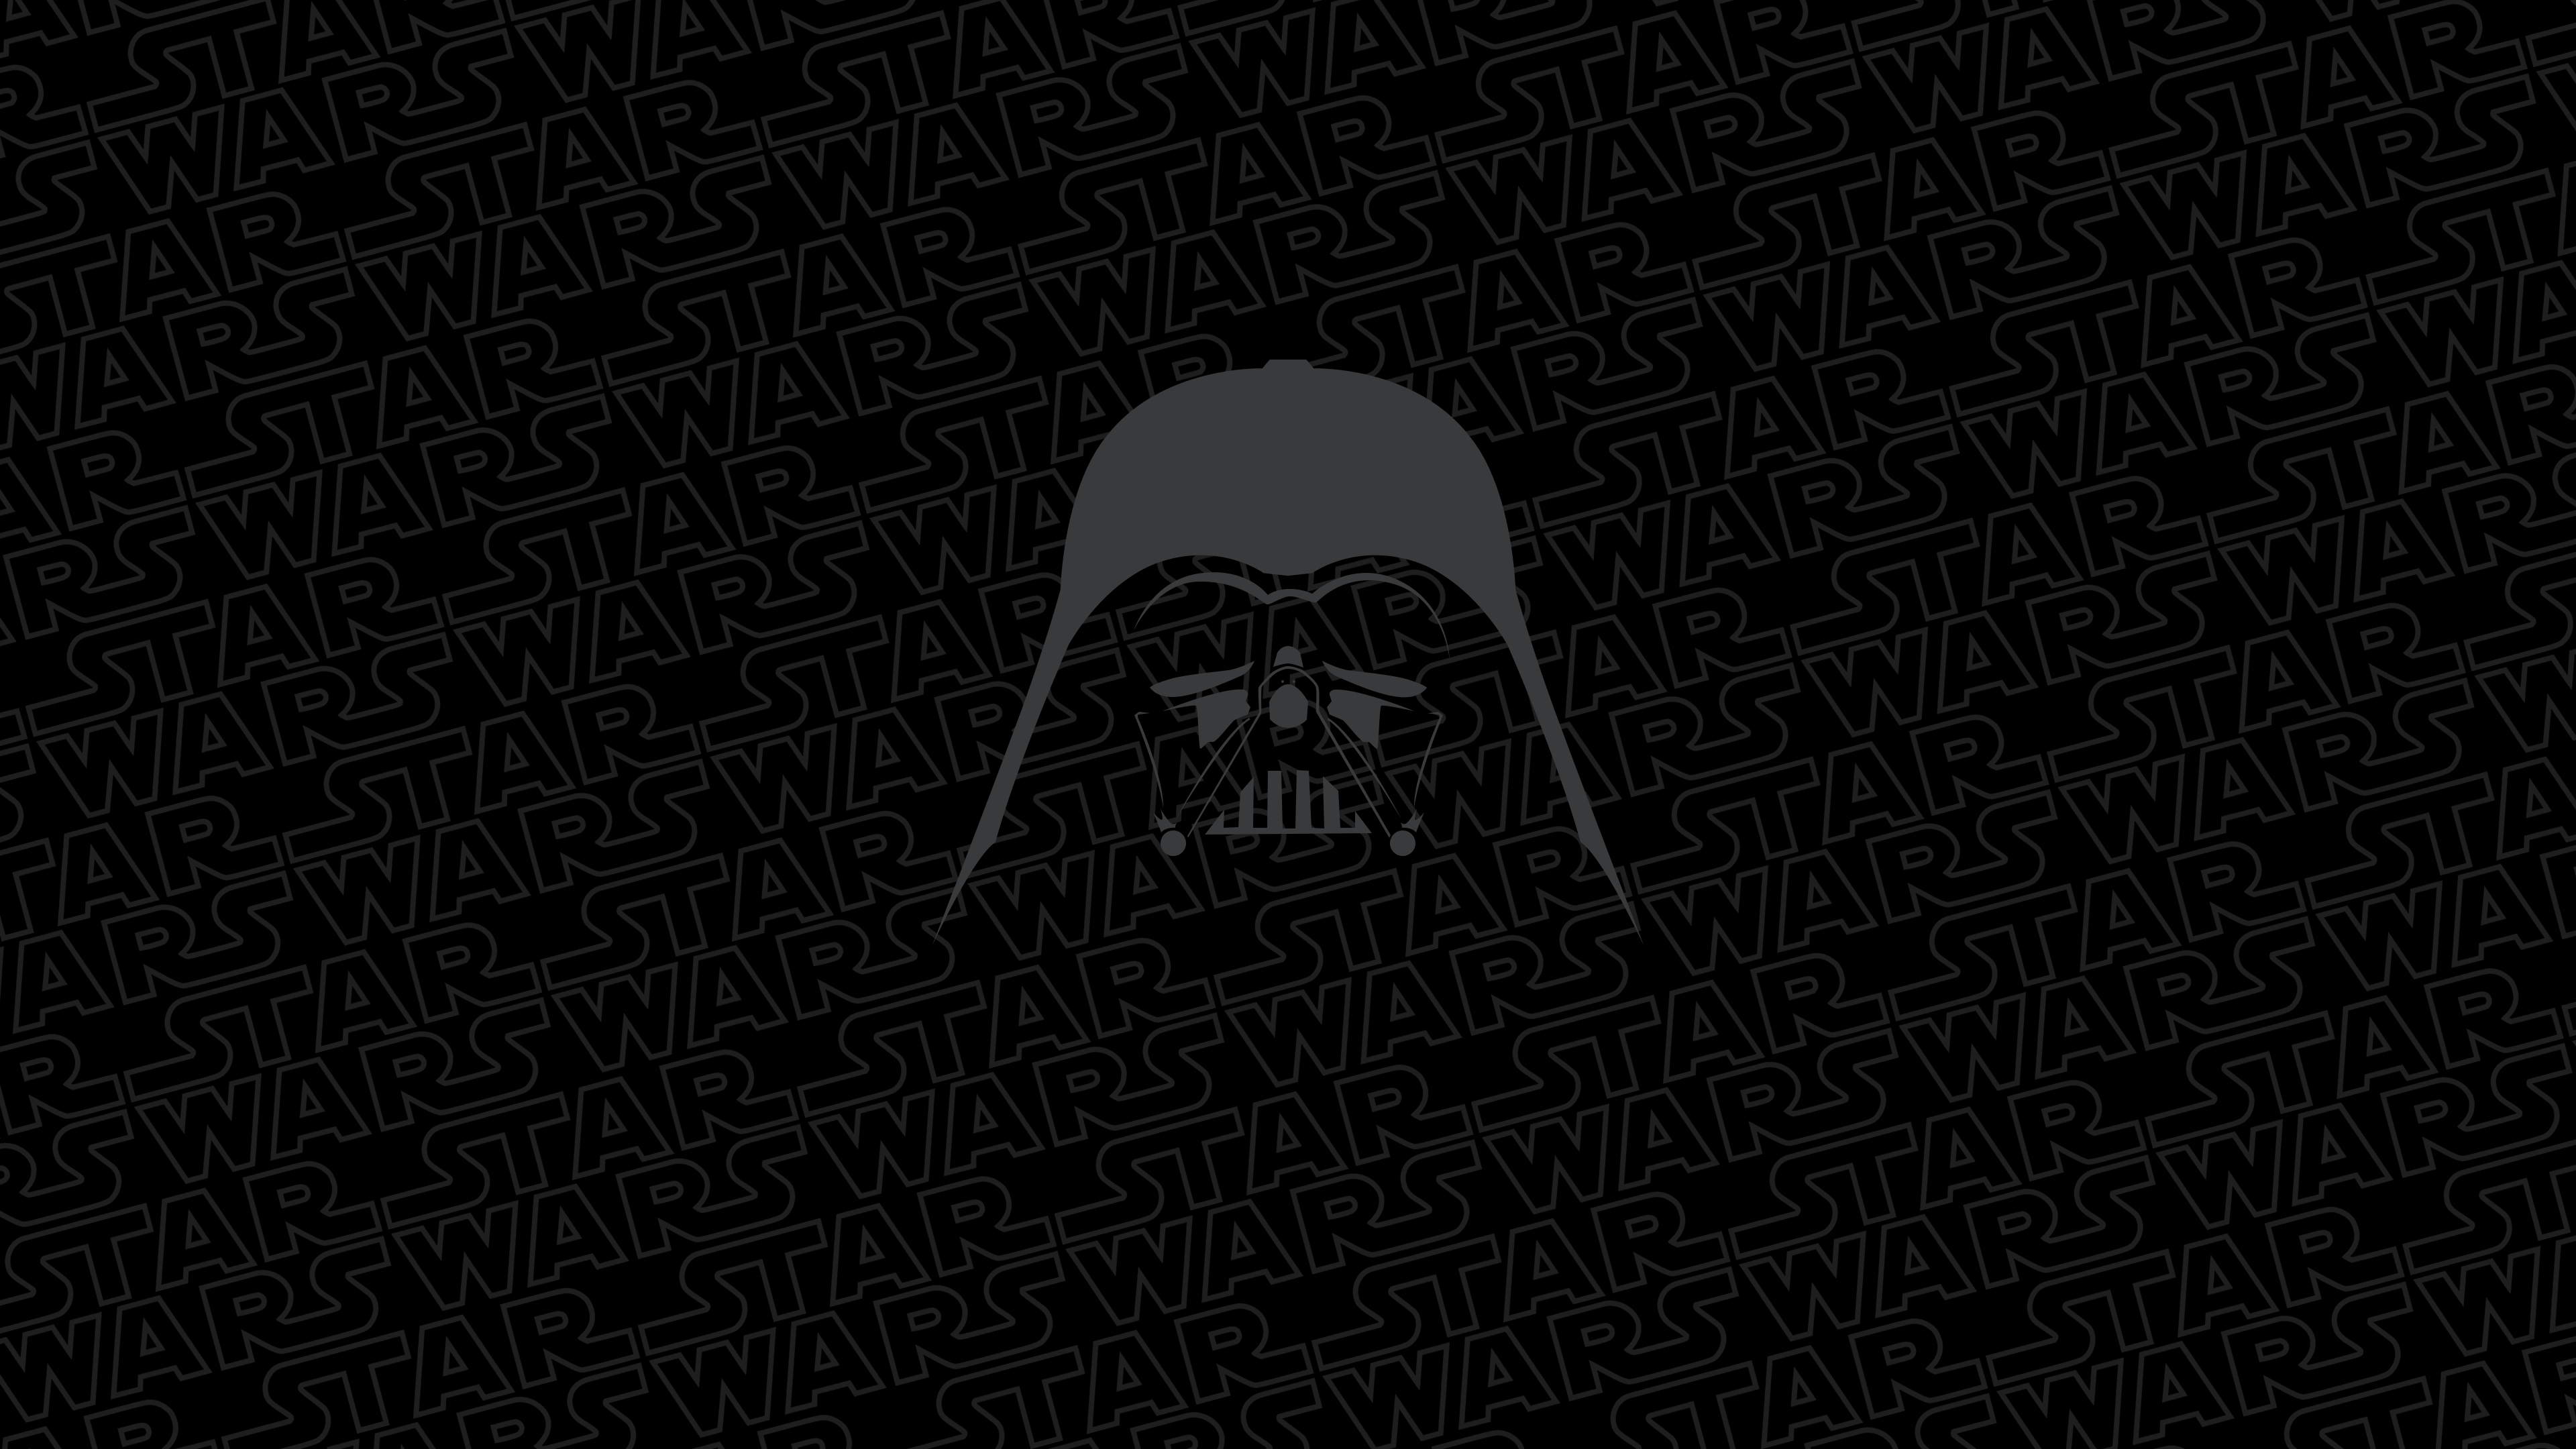 Star Wars - Darth Vader - Wallpaper